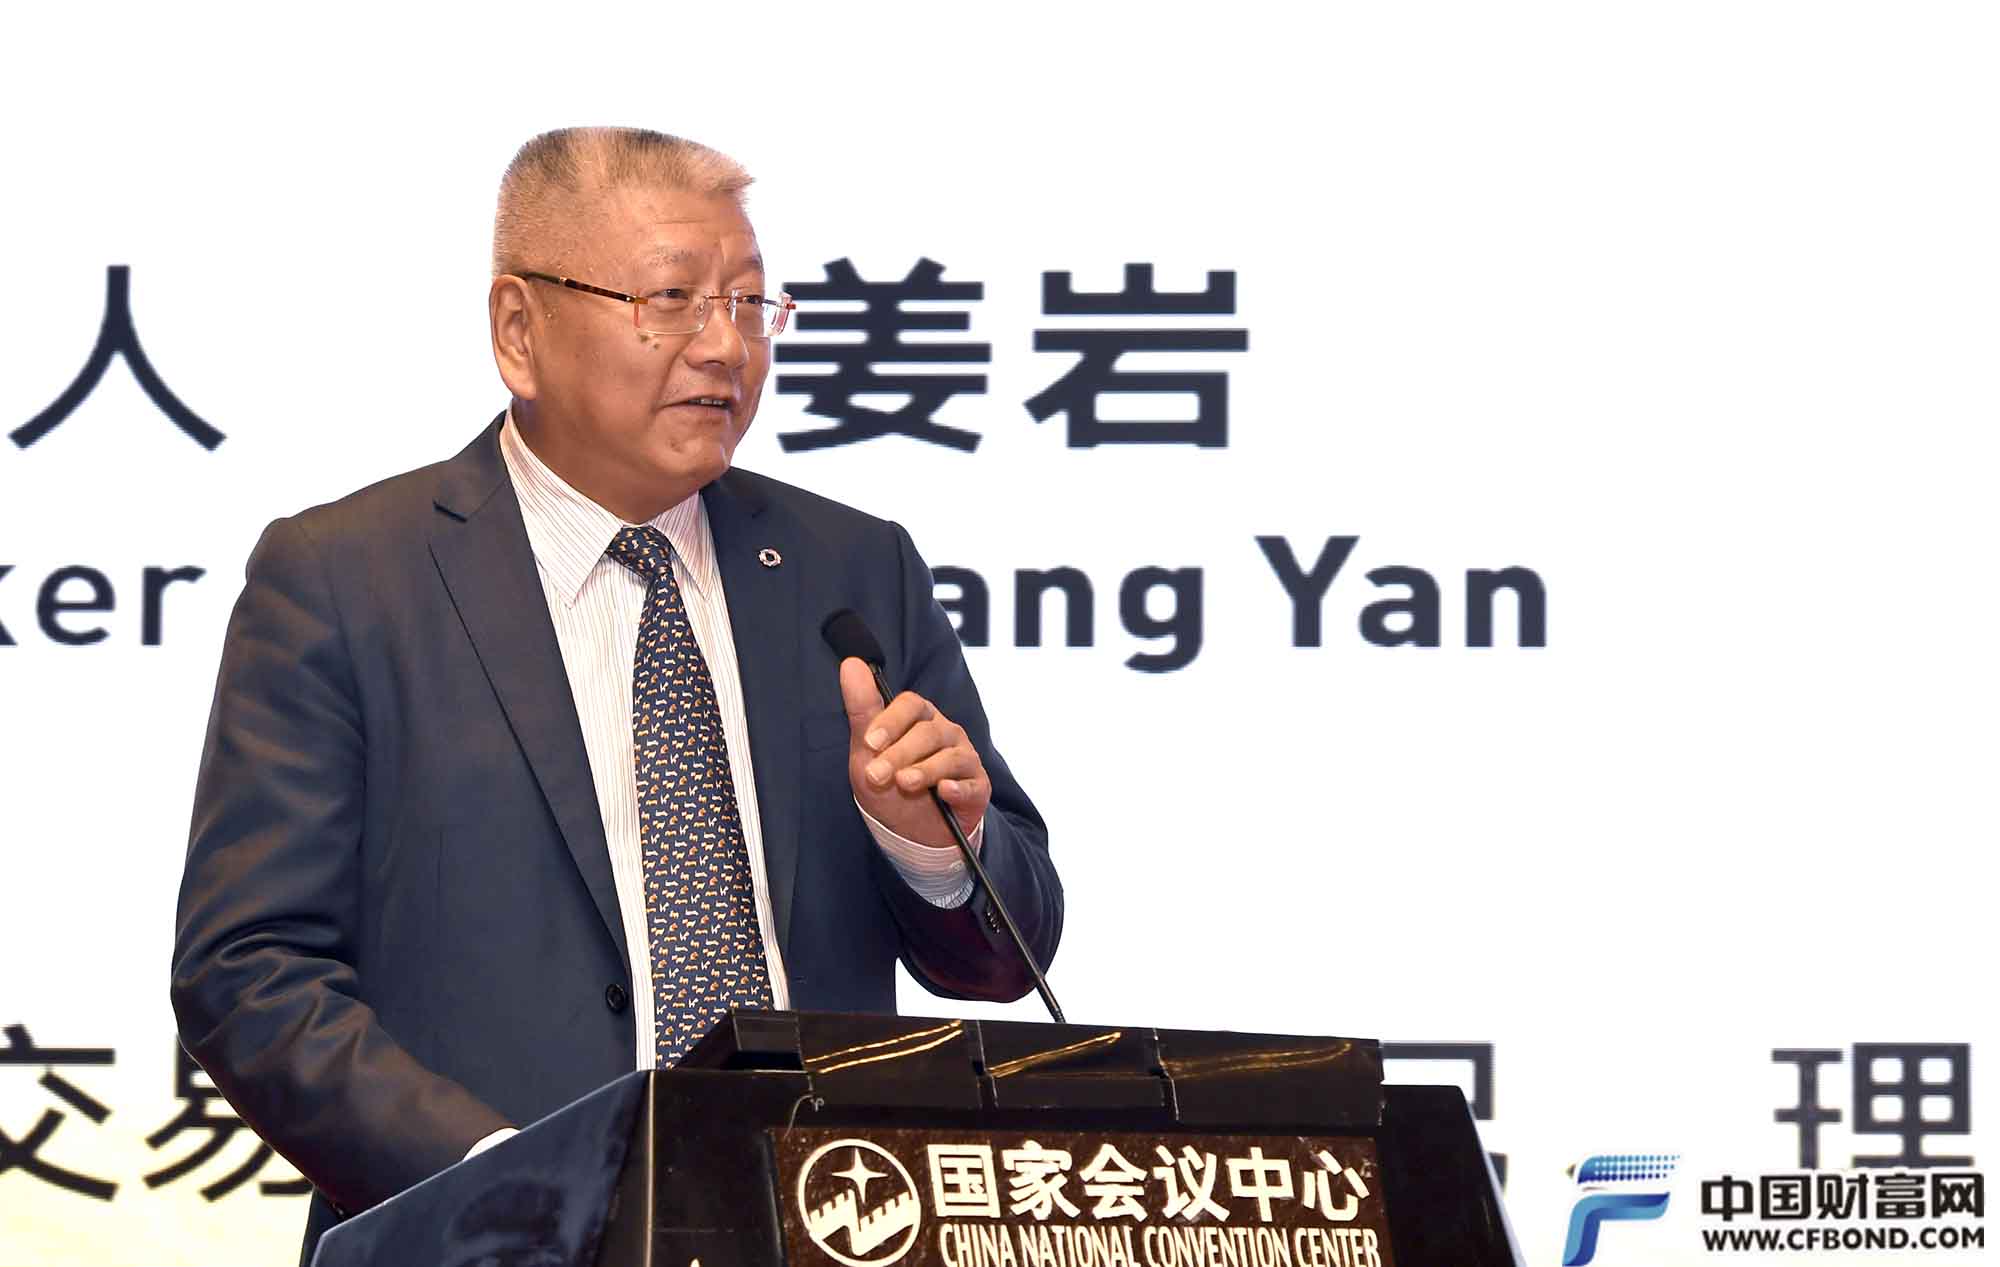 上海期货交易所理事长姜岩发表主题演讲